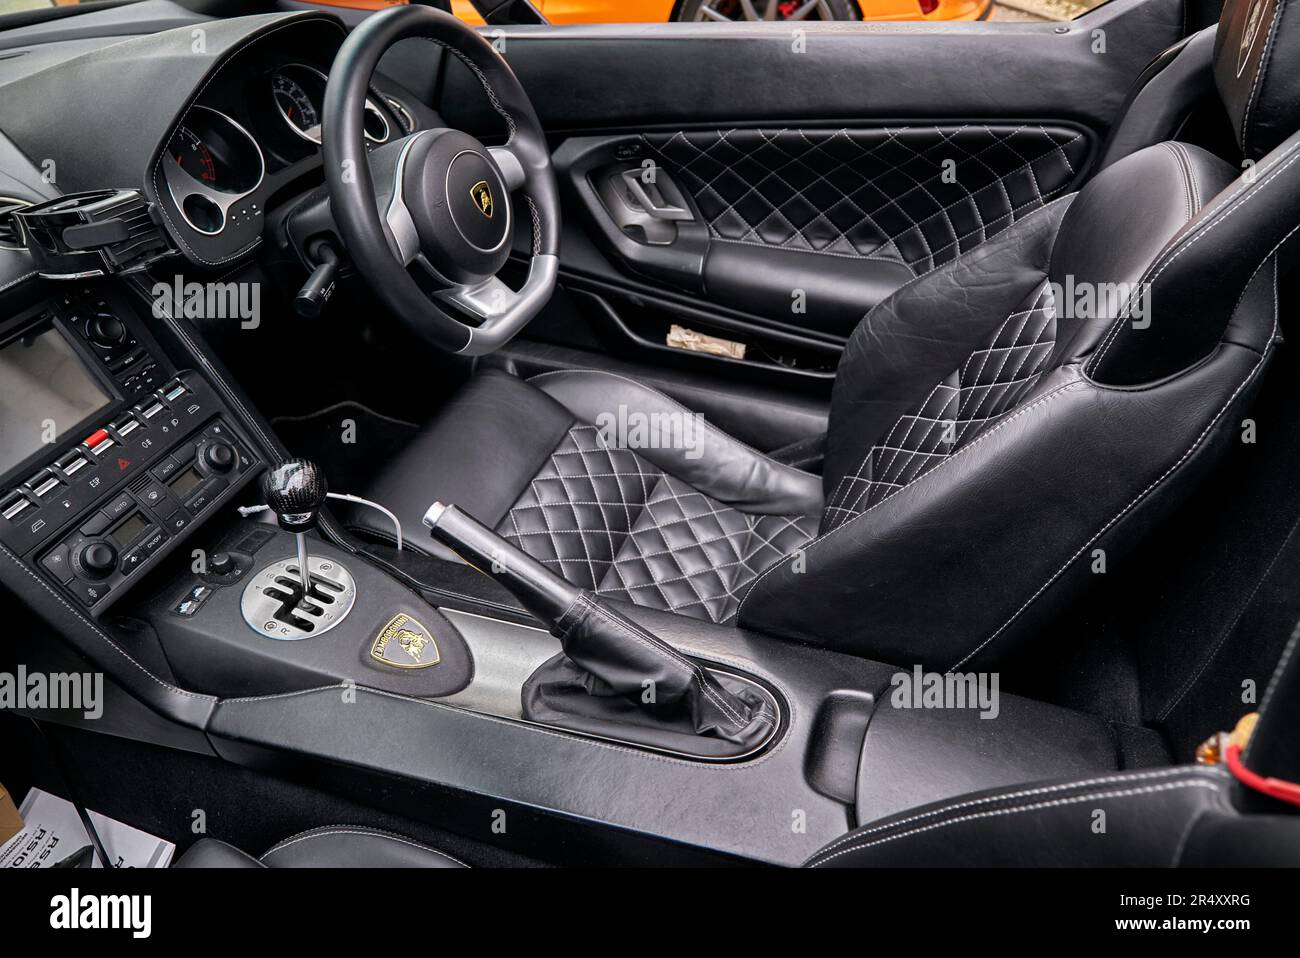 Cockpit and interior of a Lamborghini supercar Stock Photo